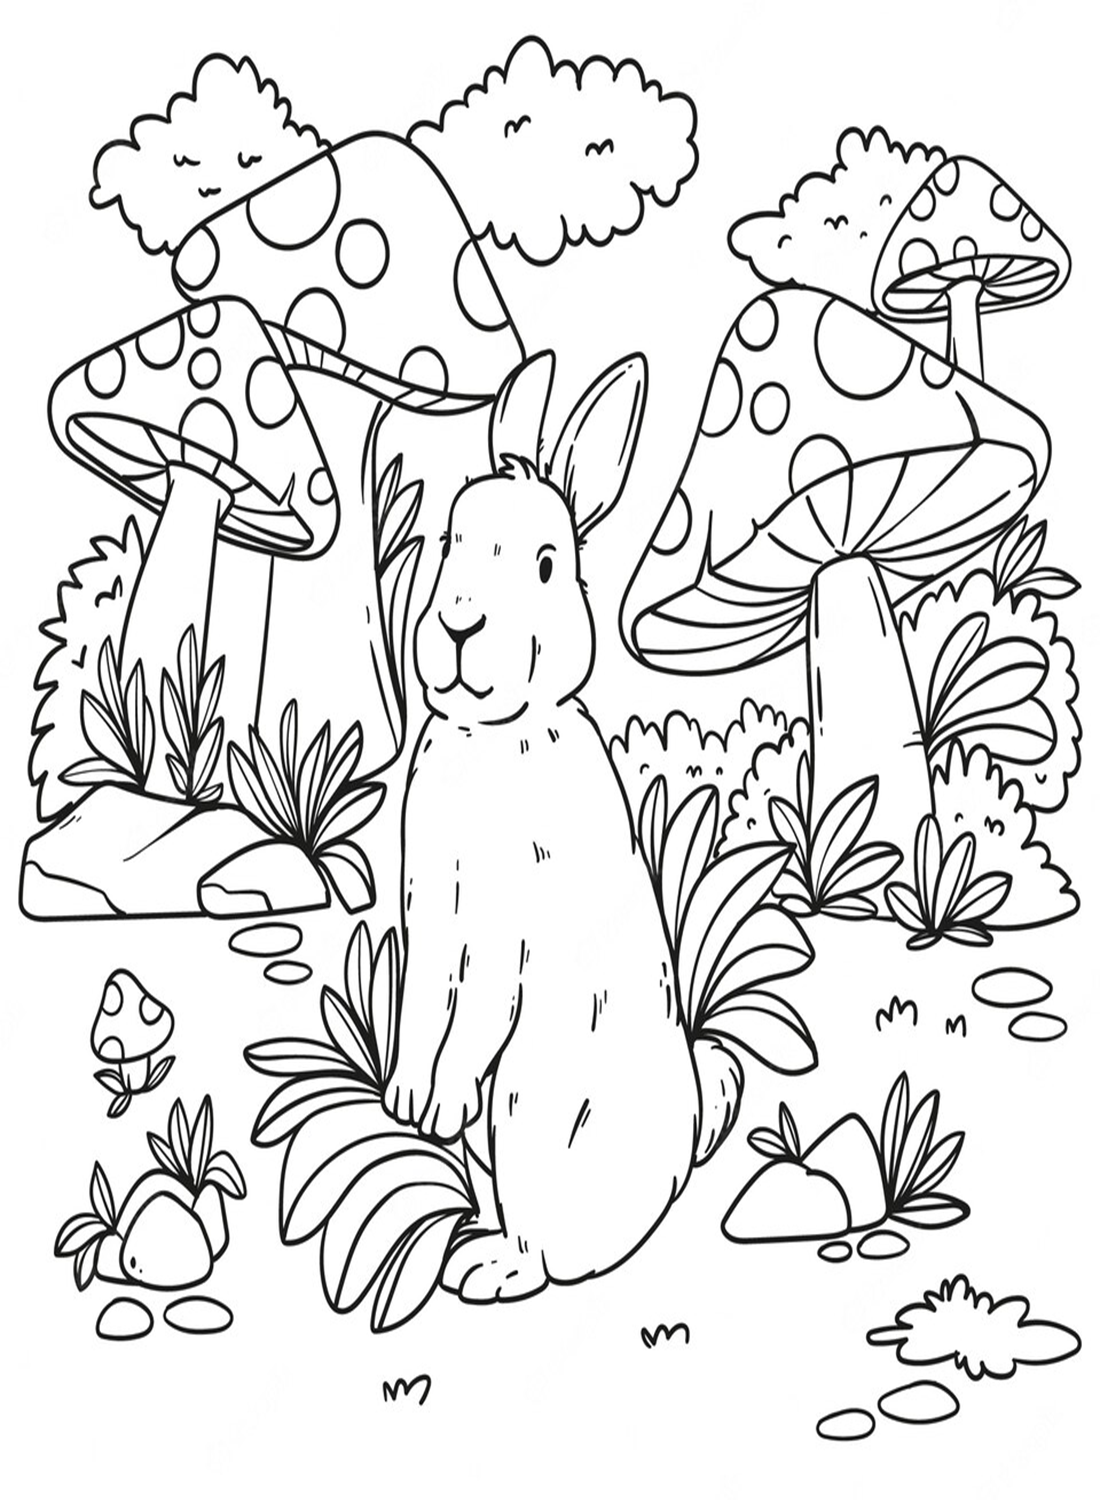 Кролик в грибном лесу от Rabbit